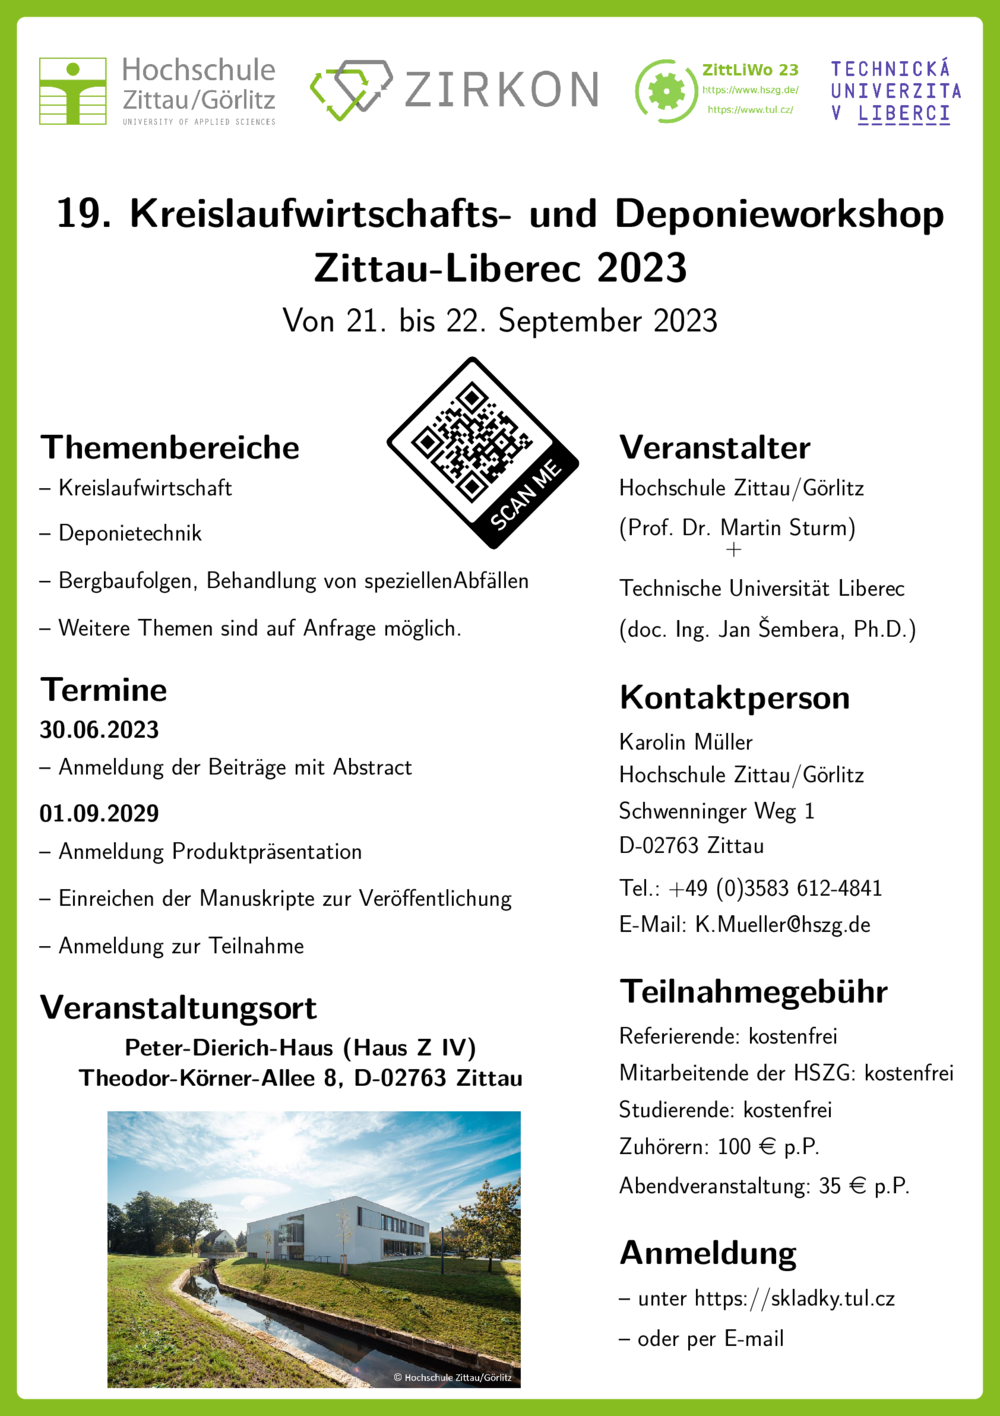 Poster mit Informationen zur Konferenz 